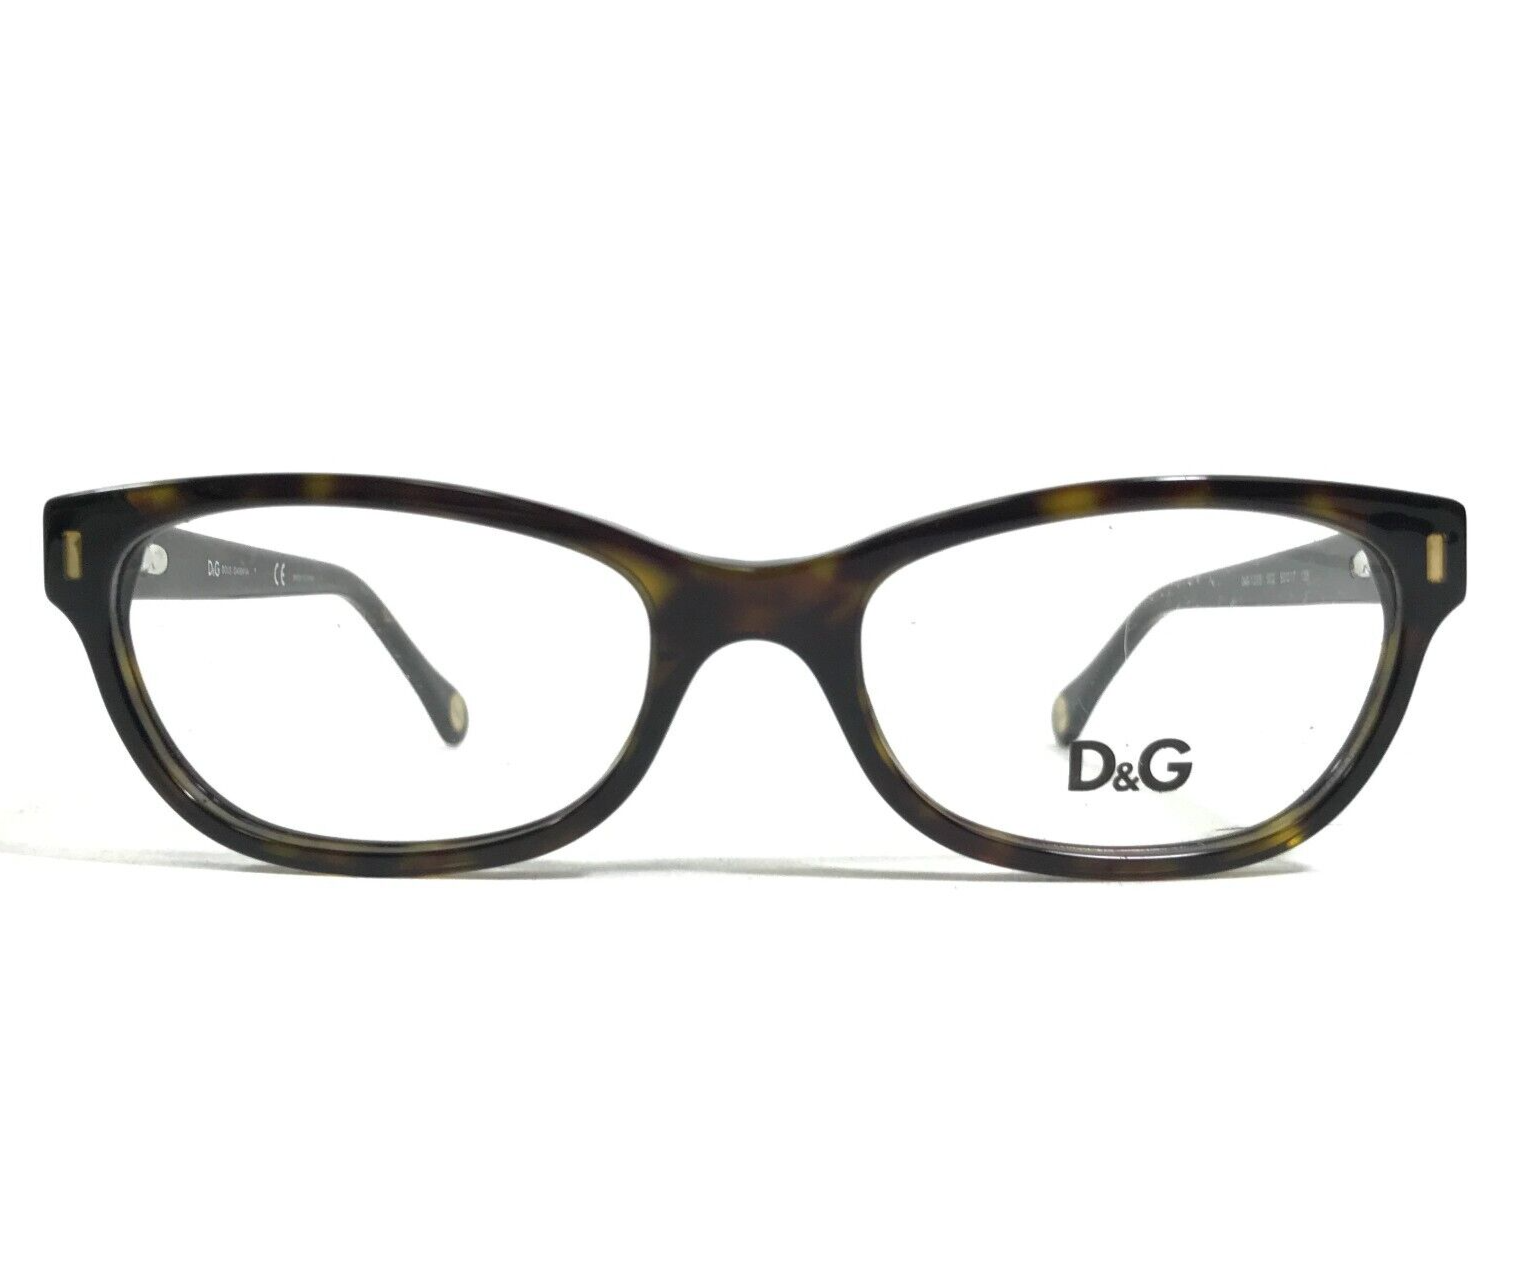 Primary image for Dolce & Gabbana Eyeglasses Frames D&G1205 502 Tortoise Cat Eye 50-17-135